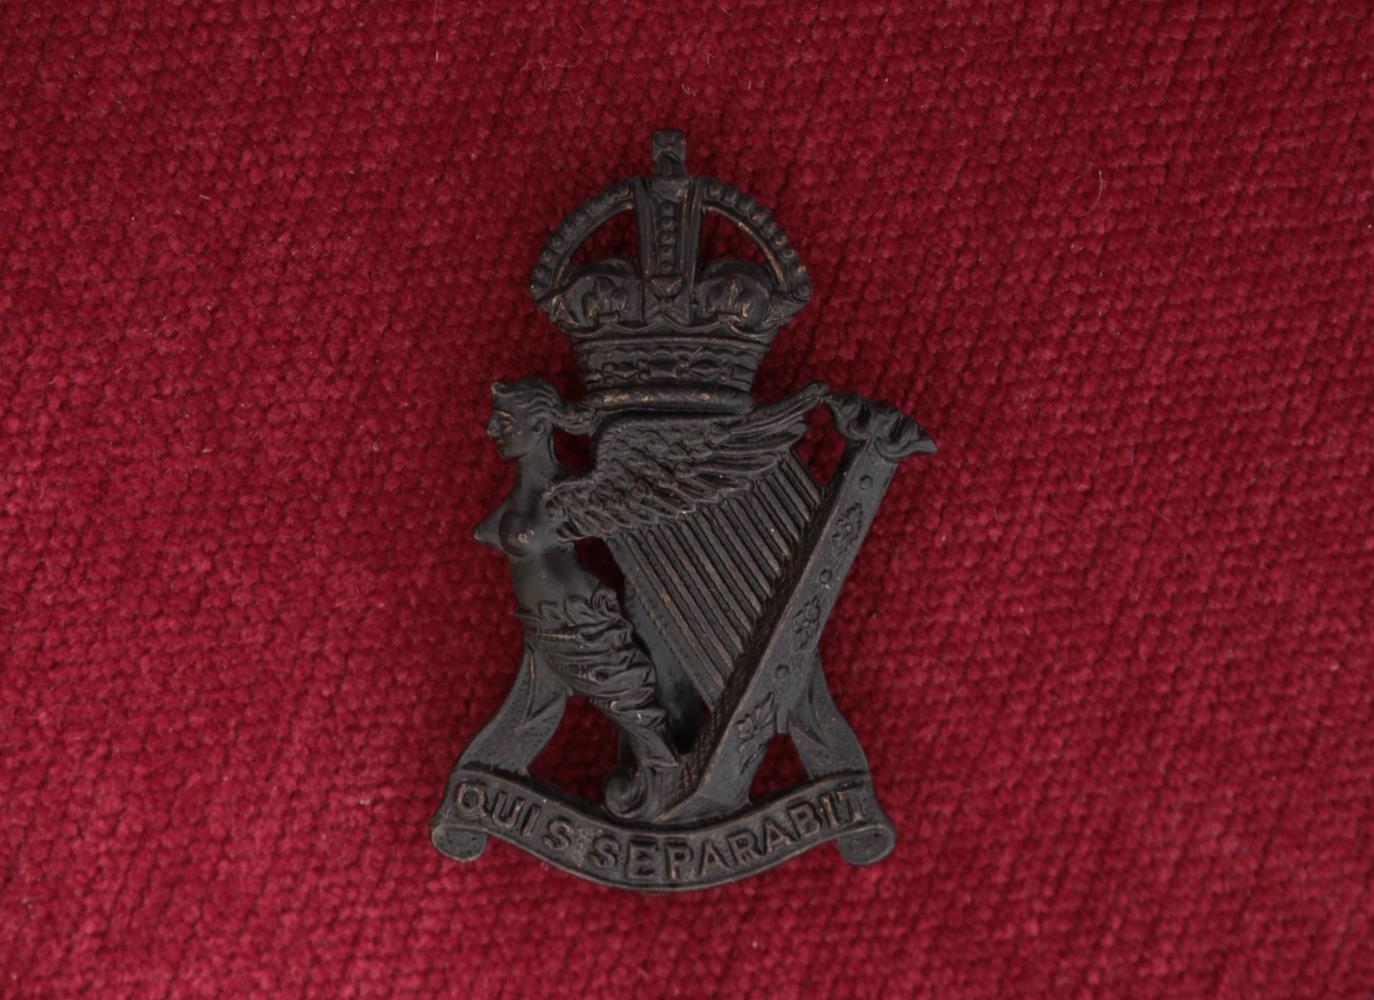 Royal Ulster Rifles (Black)